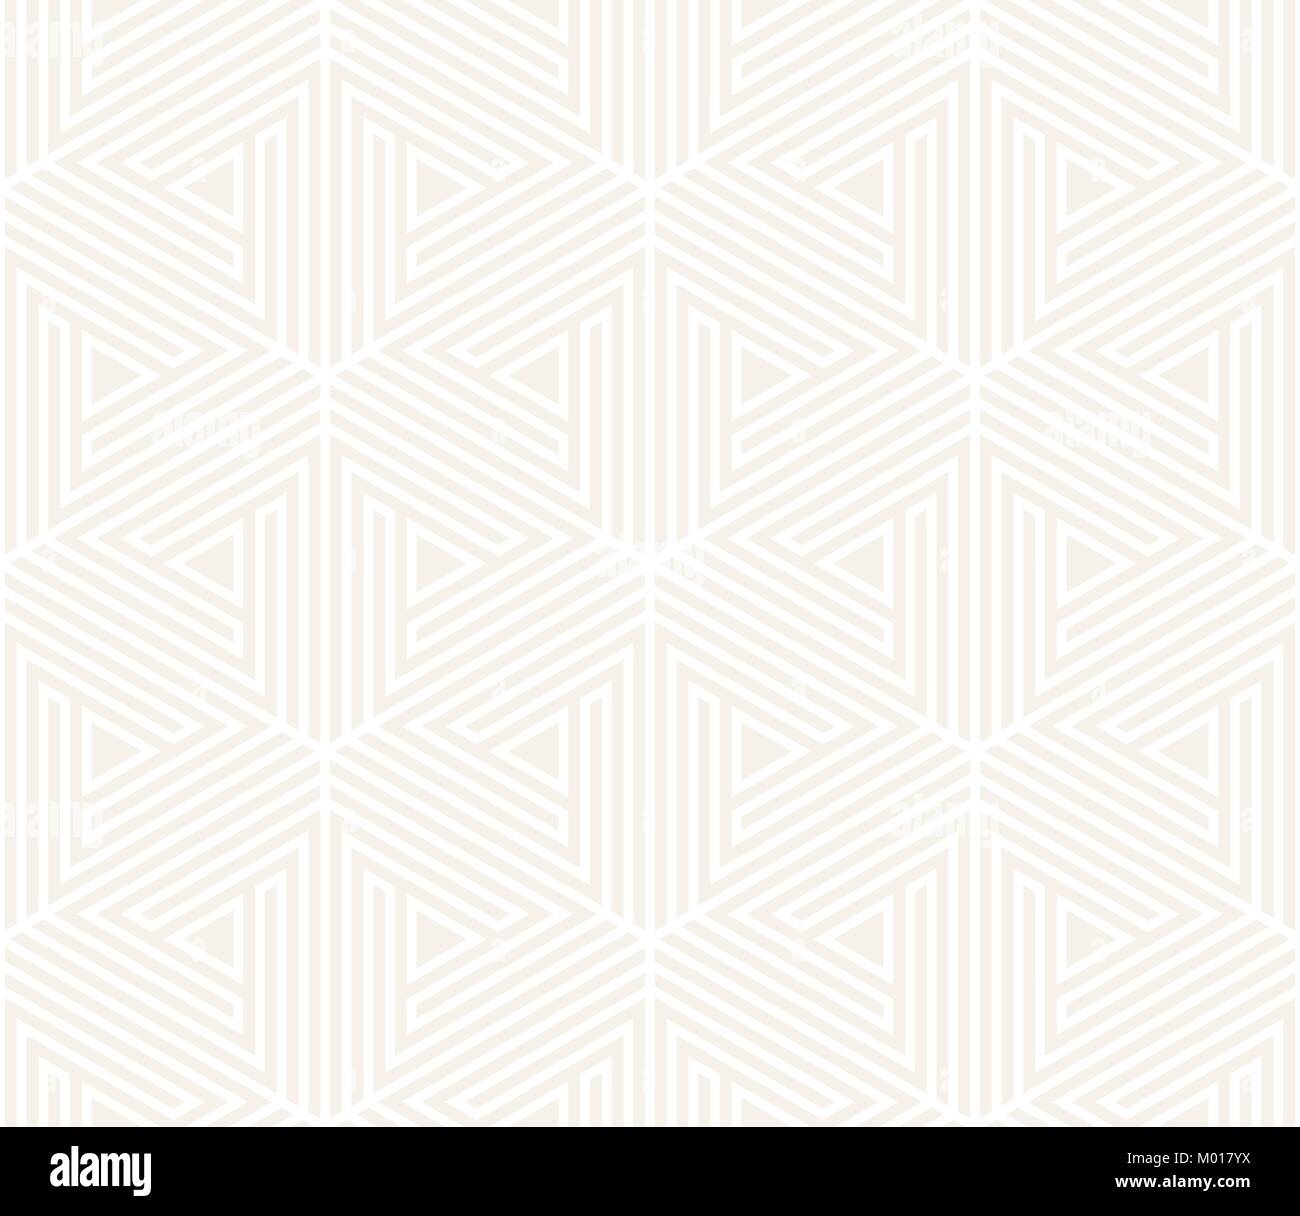 Vettore sottili seamless pattern. Moderno ed elegante texture astratta. Ripetizione tiling geometrica da elementi a strisce Illustrazione Vettoriale